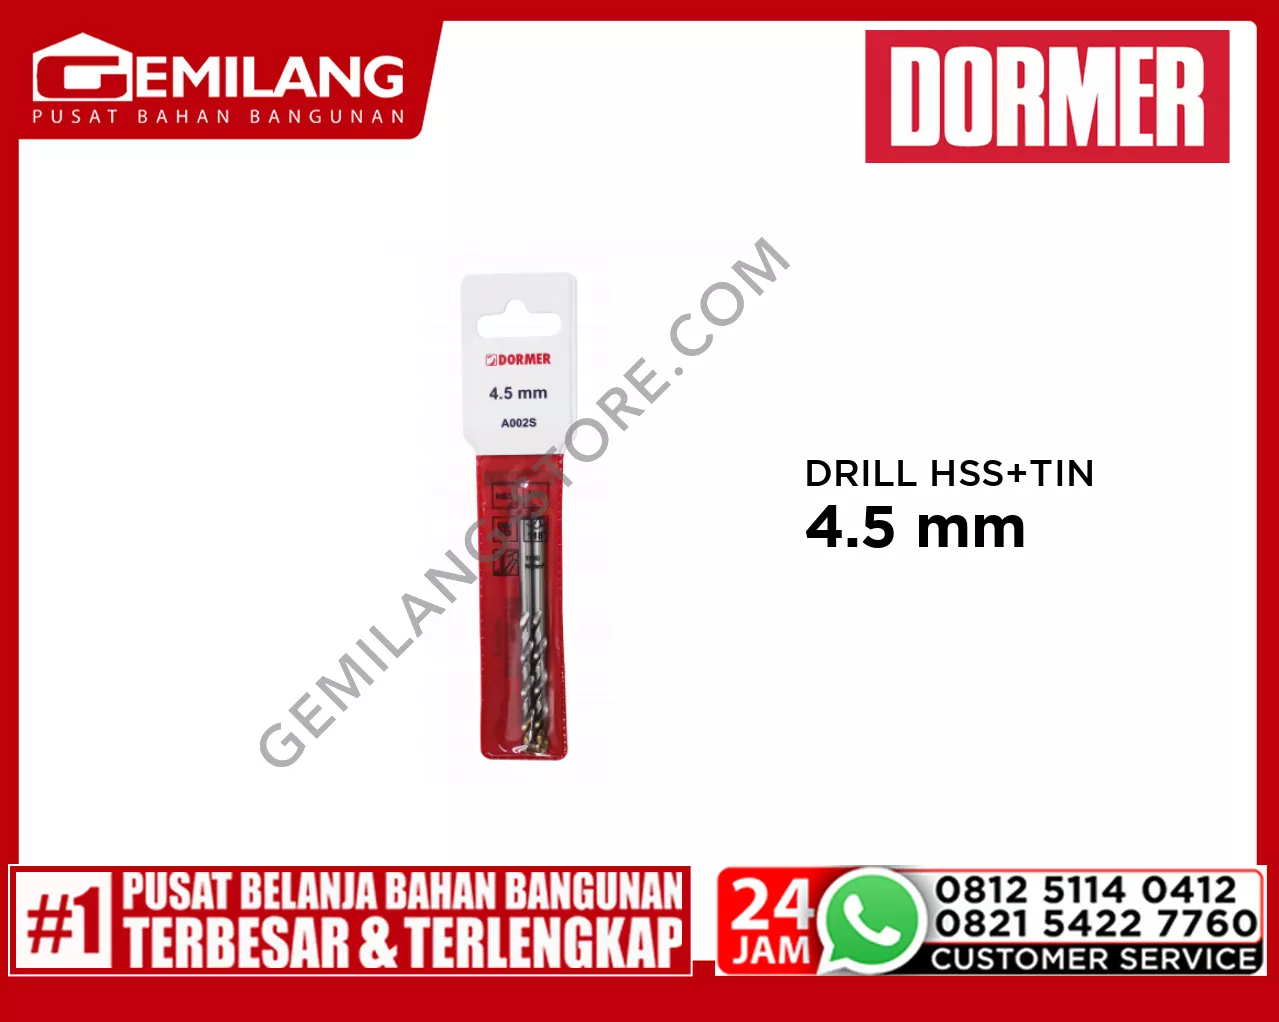 DORMER DRILL (POUCH) HSS + TIN A002S 4.5mm